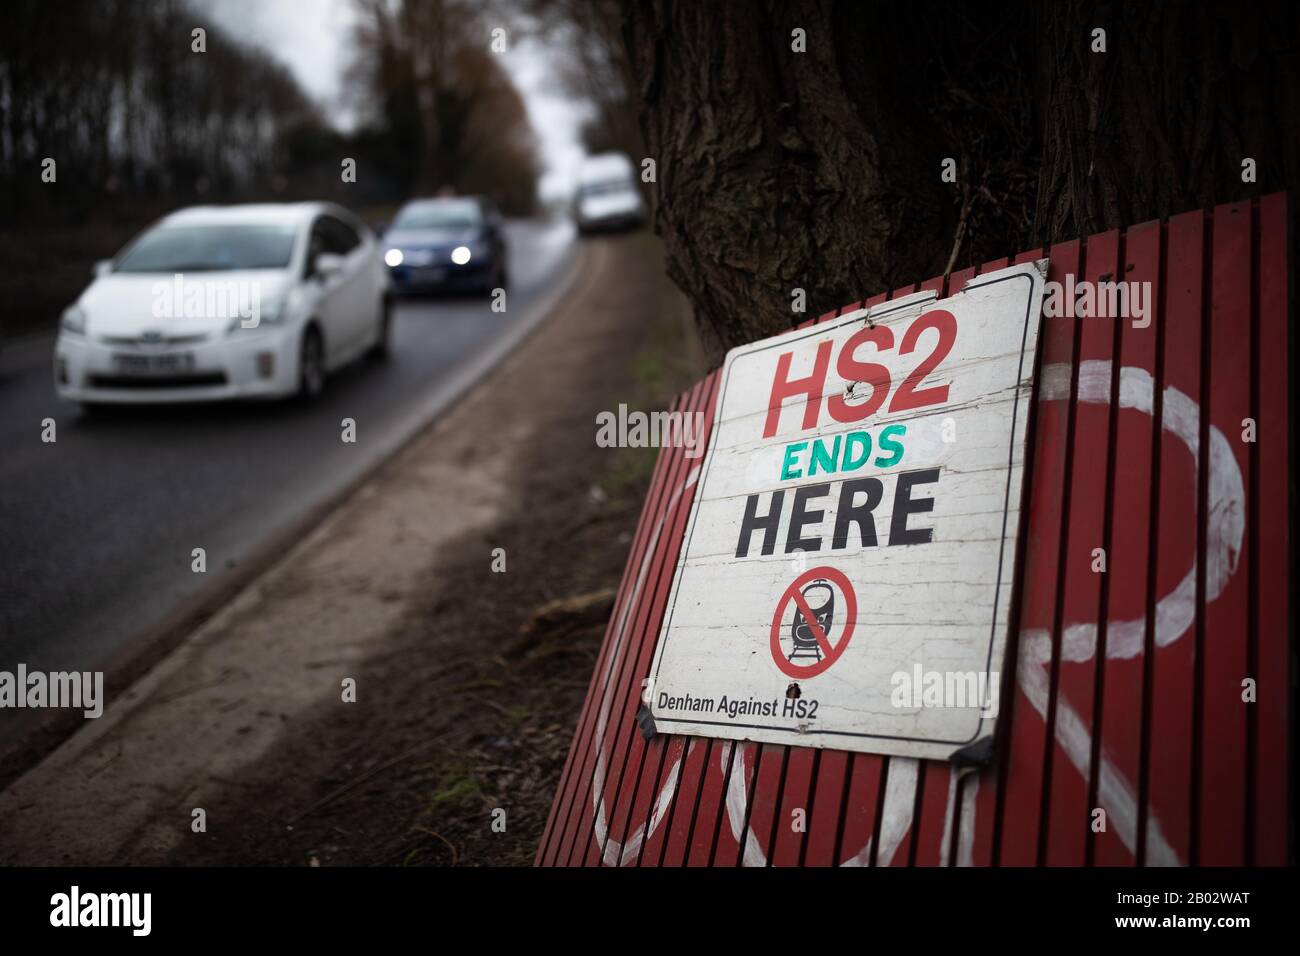 Halten Sie HS2-Schilder in der Nähe des Standorts an, an dem die Demonstranten eine Bohrplattform zum Bohren des Aquifer in Uxbridge, London, besetzt haben. Stockfoto